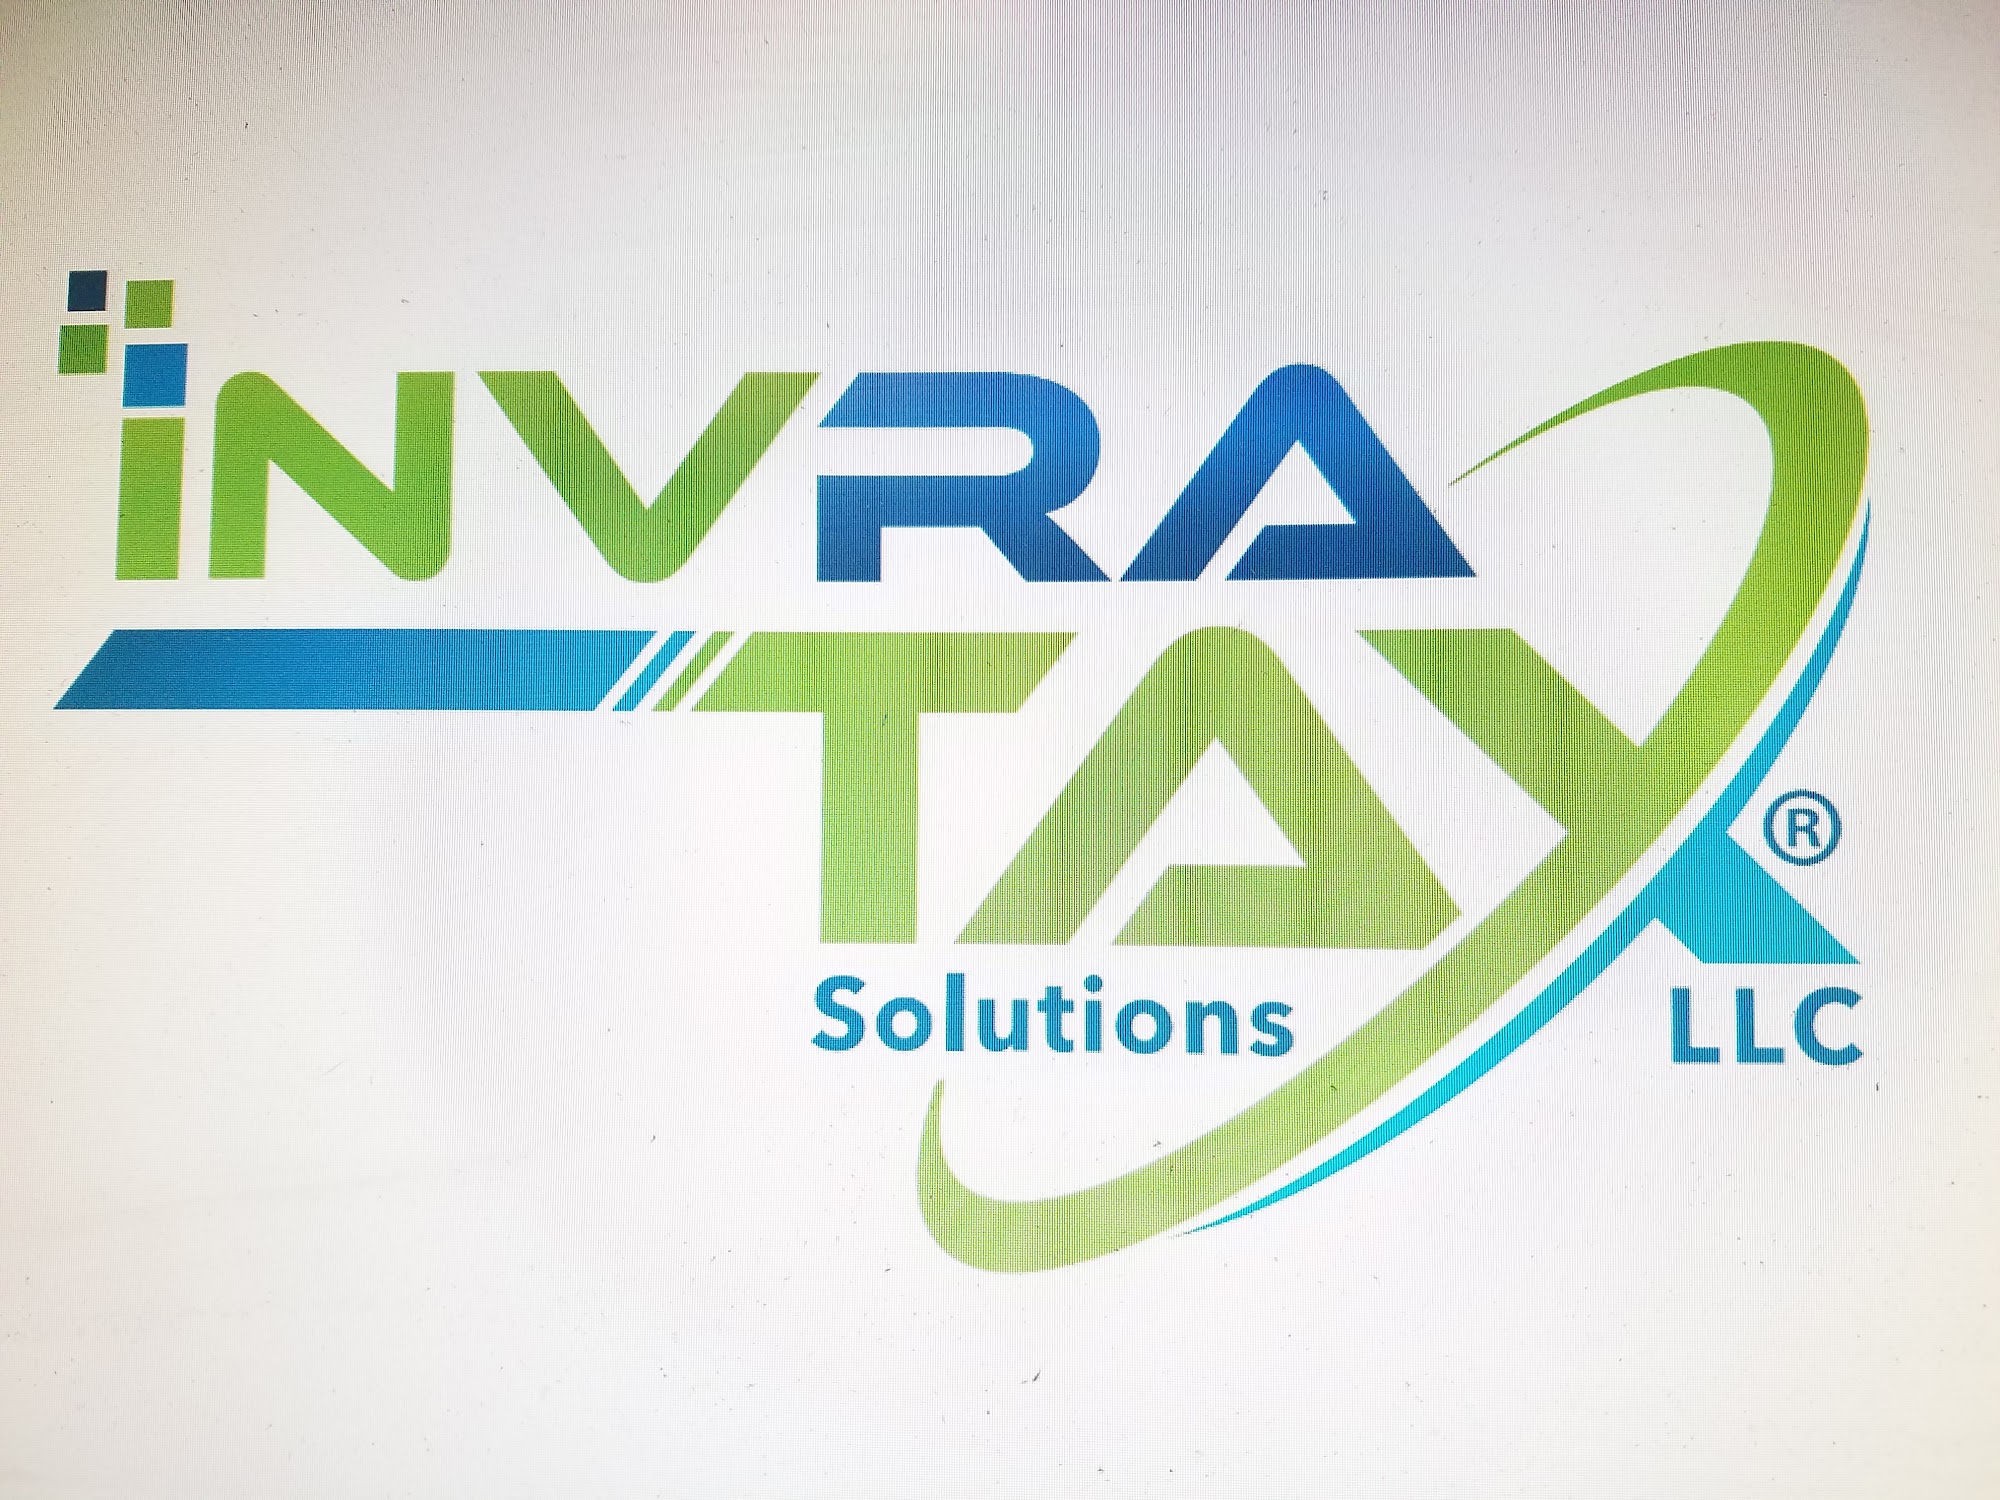 INVRA TAX SOLUTIONS LLC